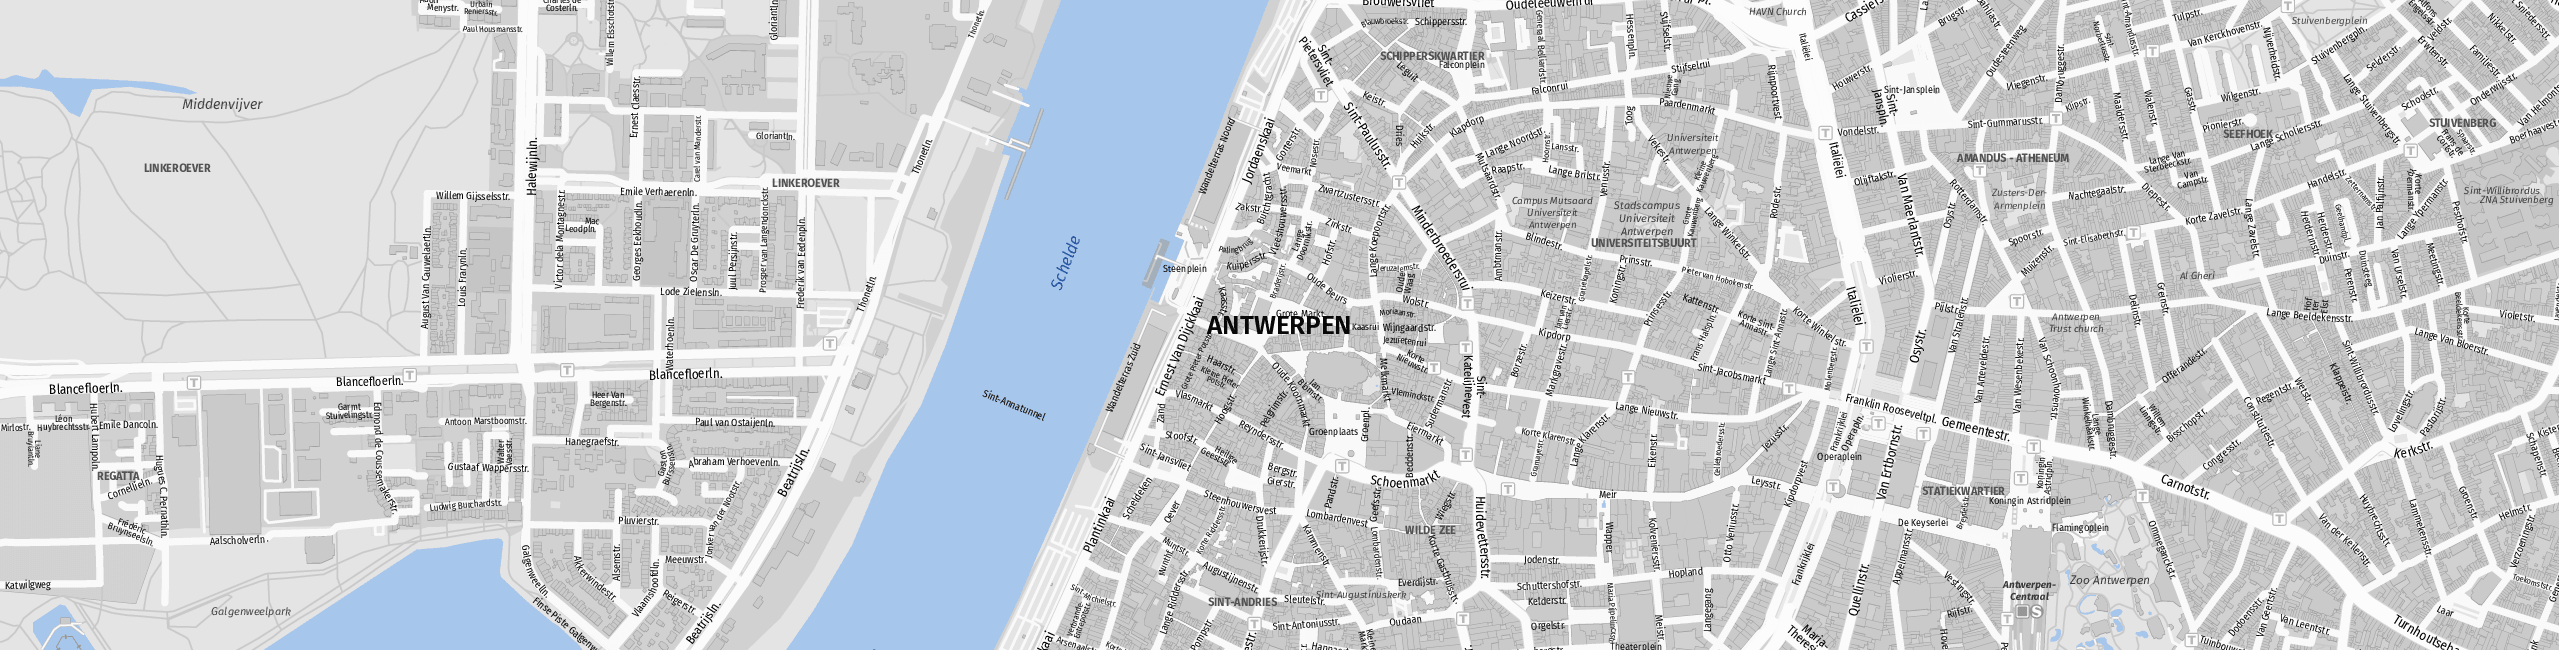 Stadtplan Anvers zum Downloaden.